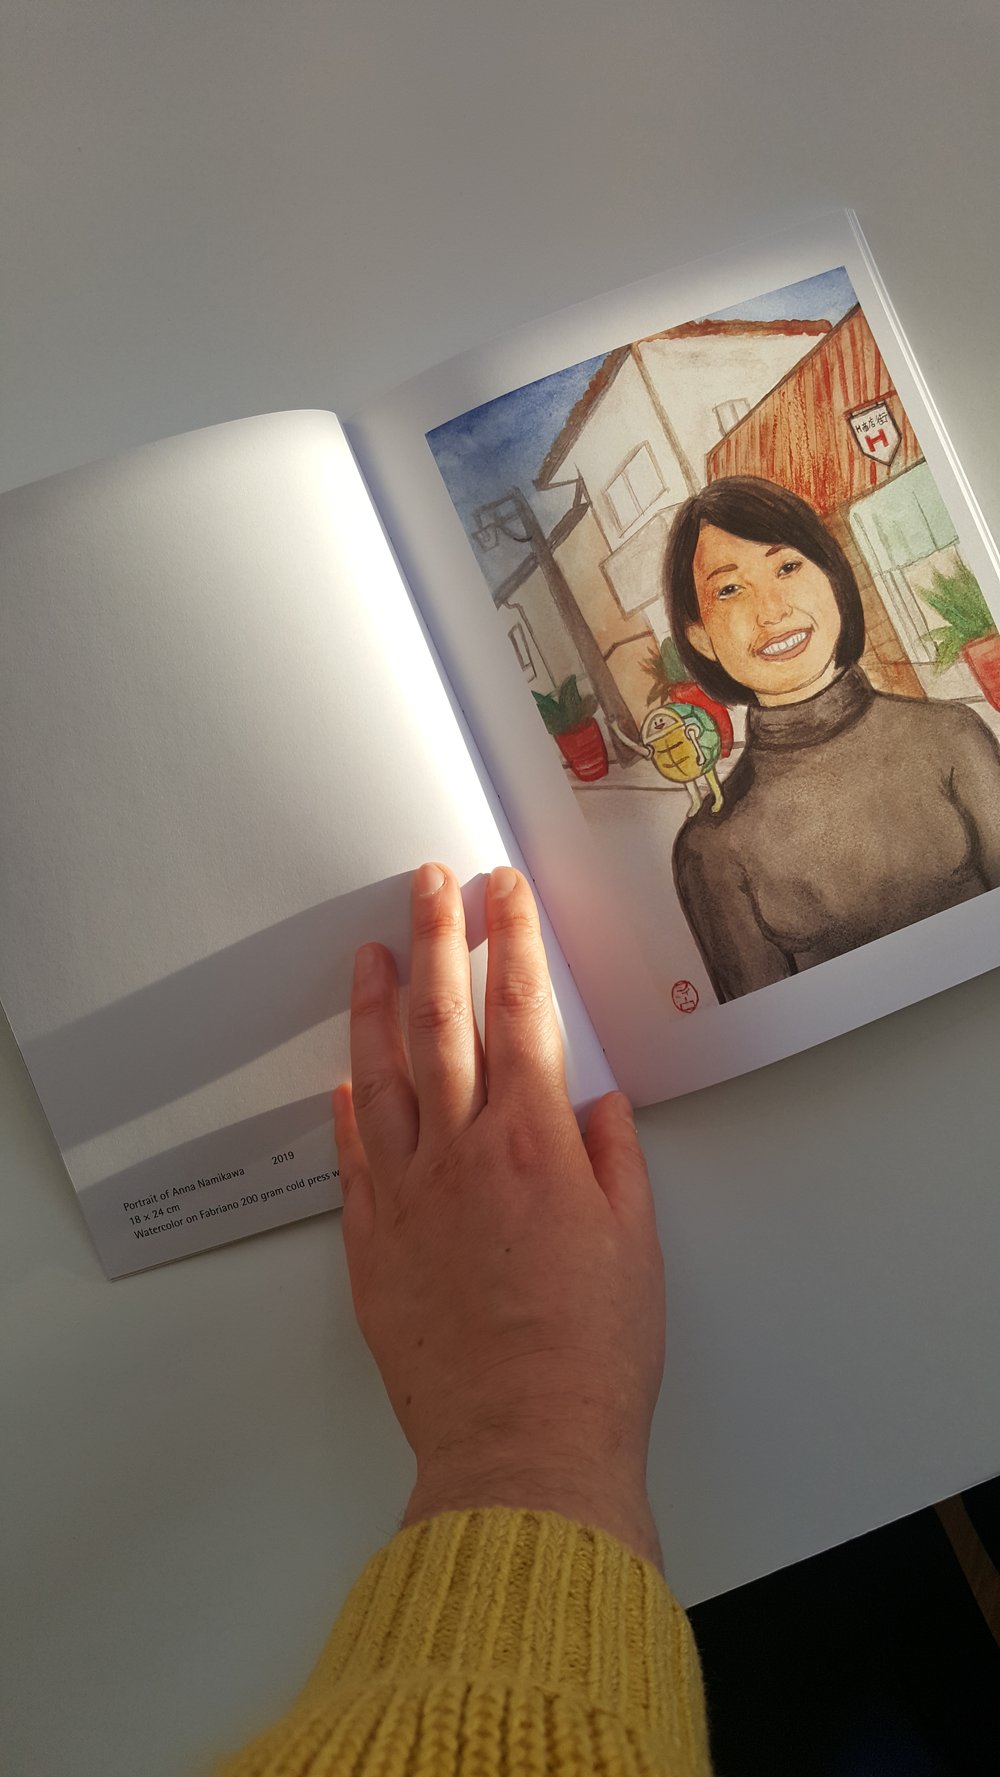 Art Book: Stories from Kameoka